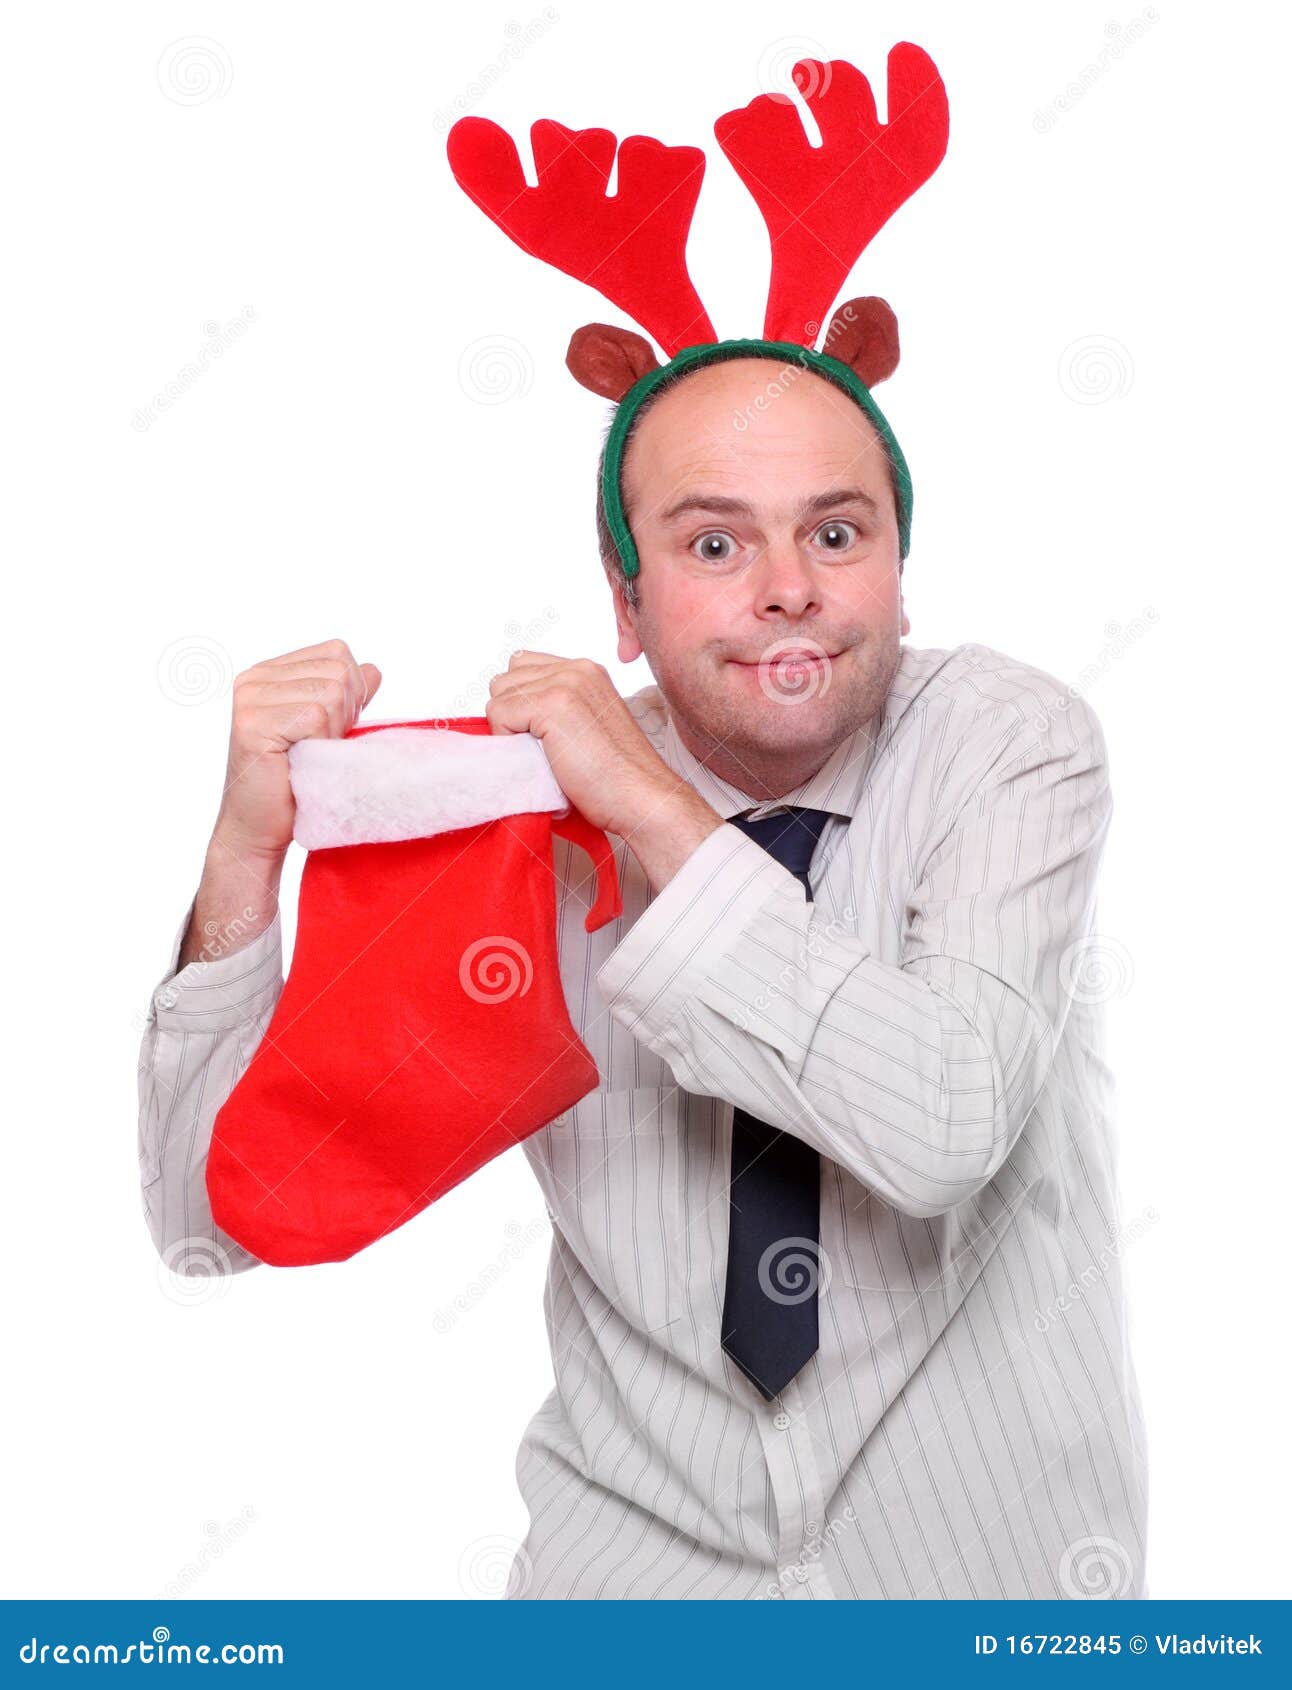 crazy businessman with rudolph reindeer attire.